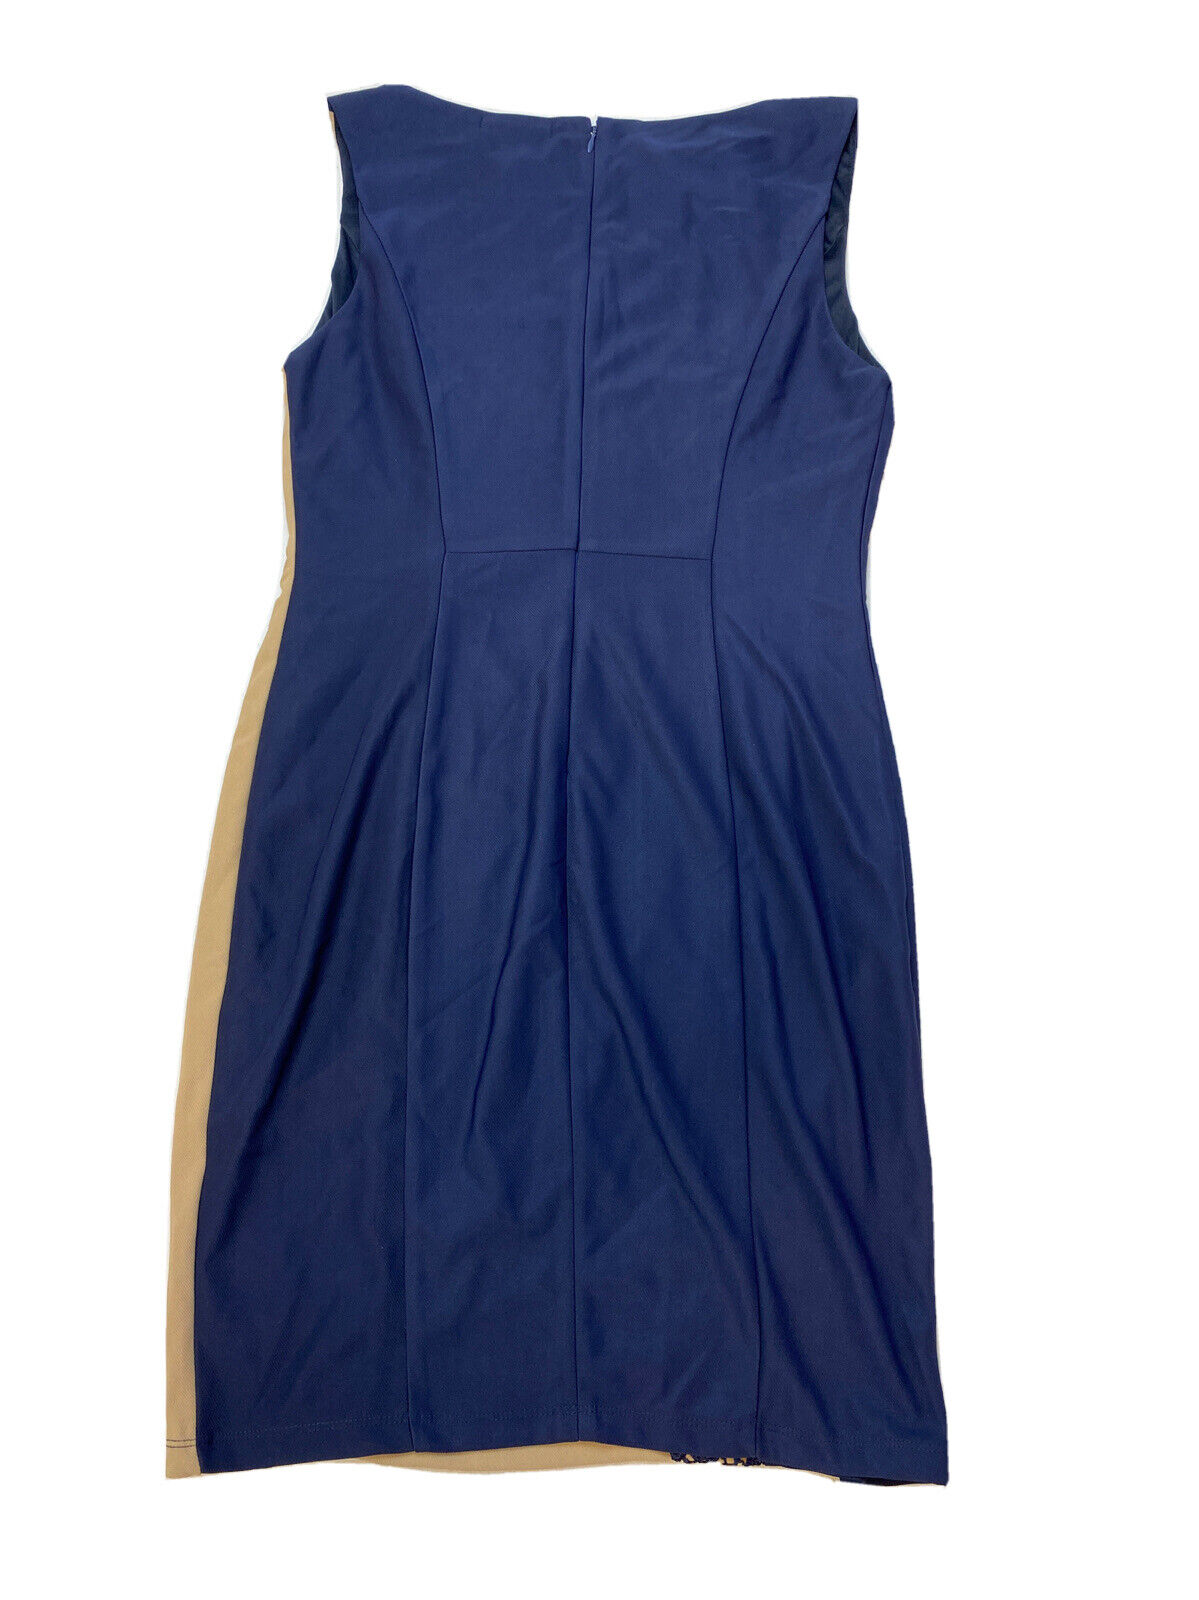 NOUVEAU Lexi Drew Women's Beige / Navy Lace Accent Shift Dress Sz L